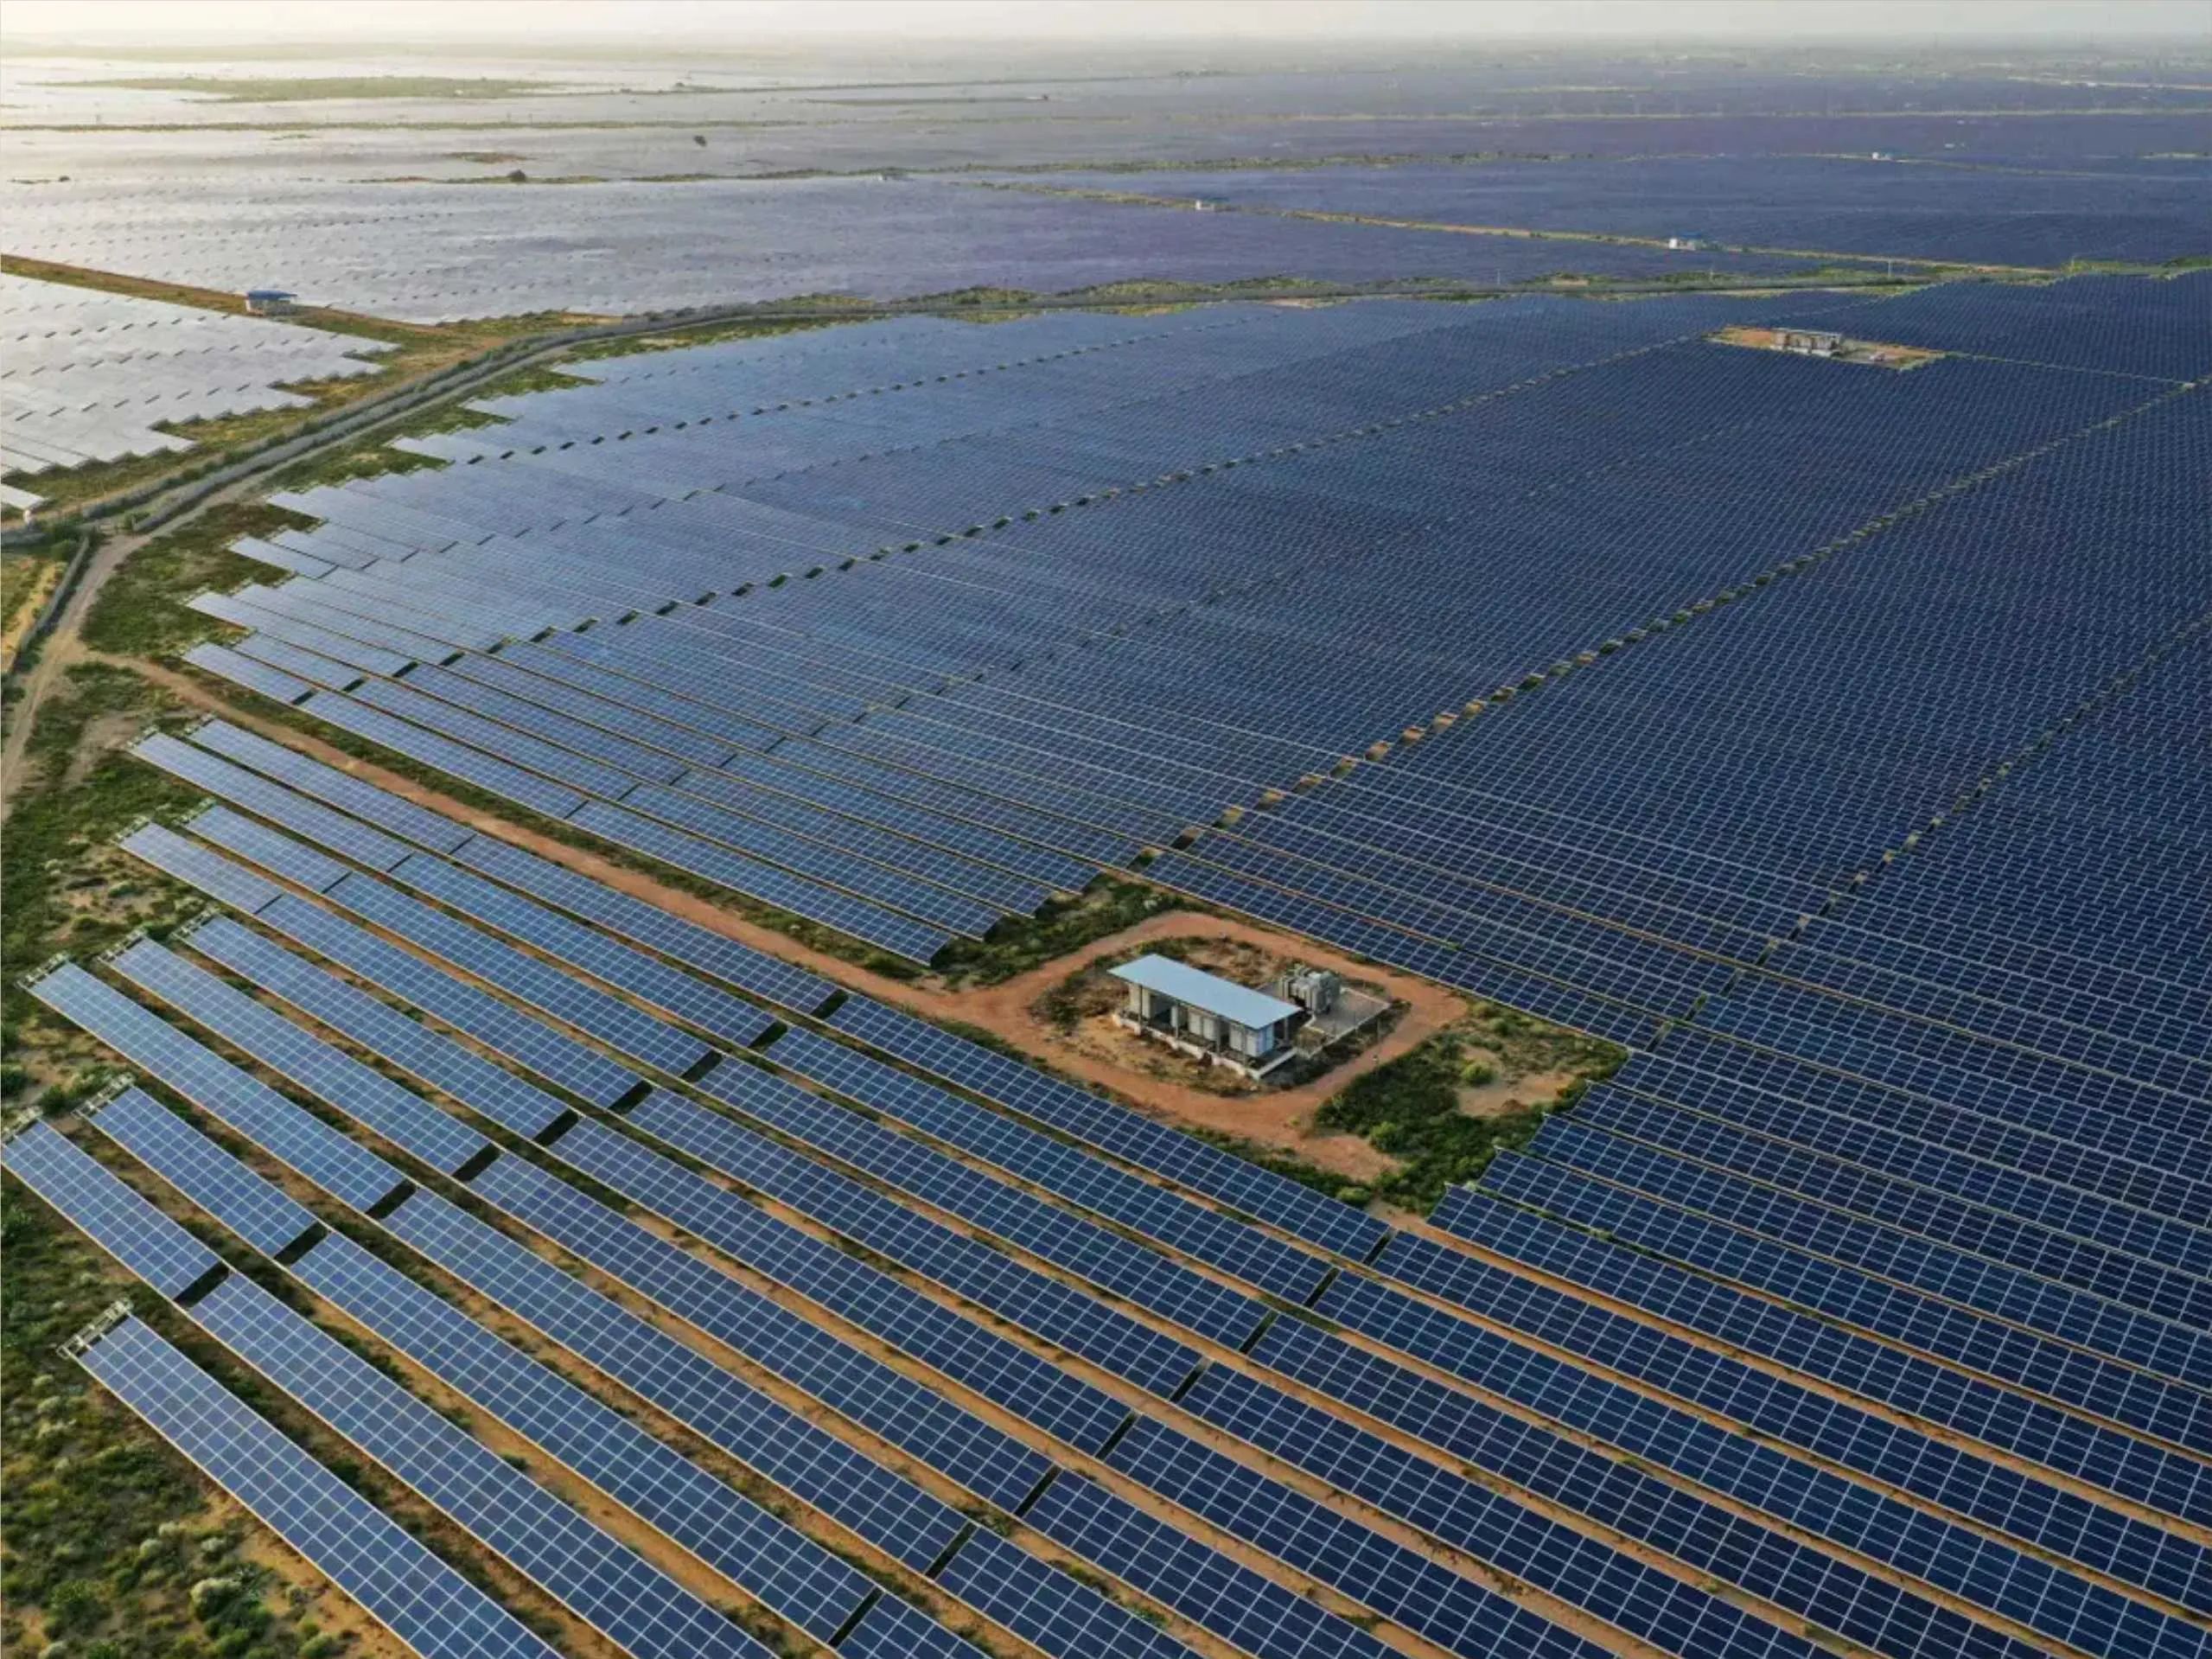 Worlds largest solar power park